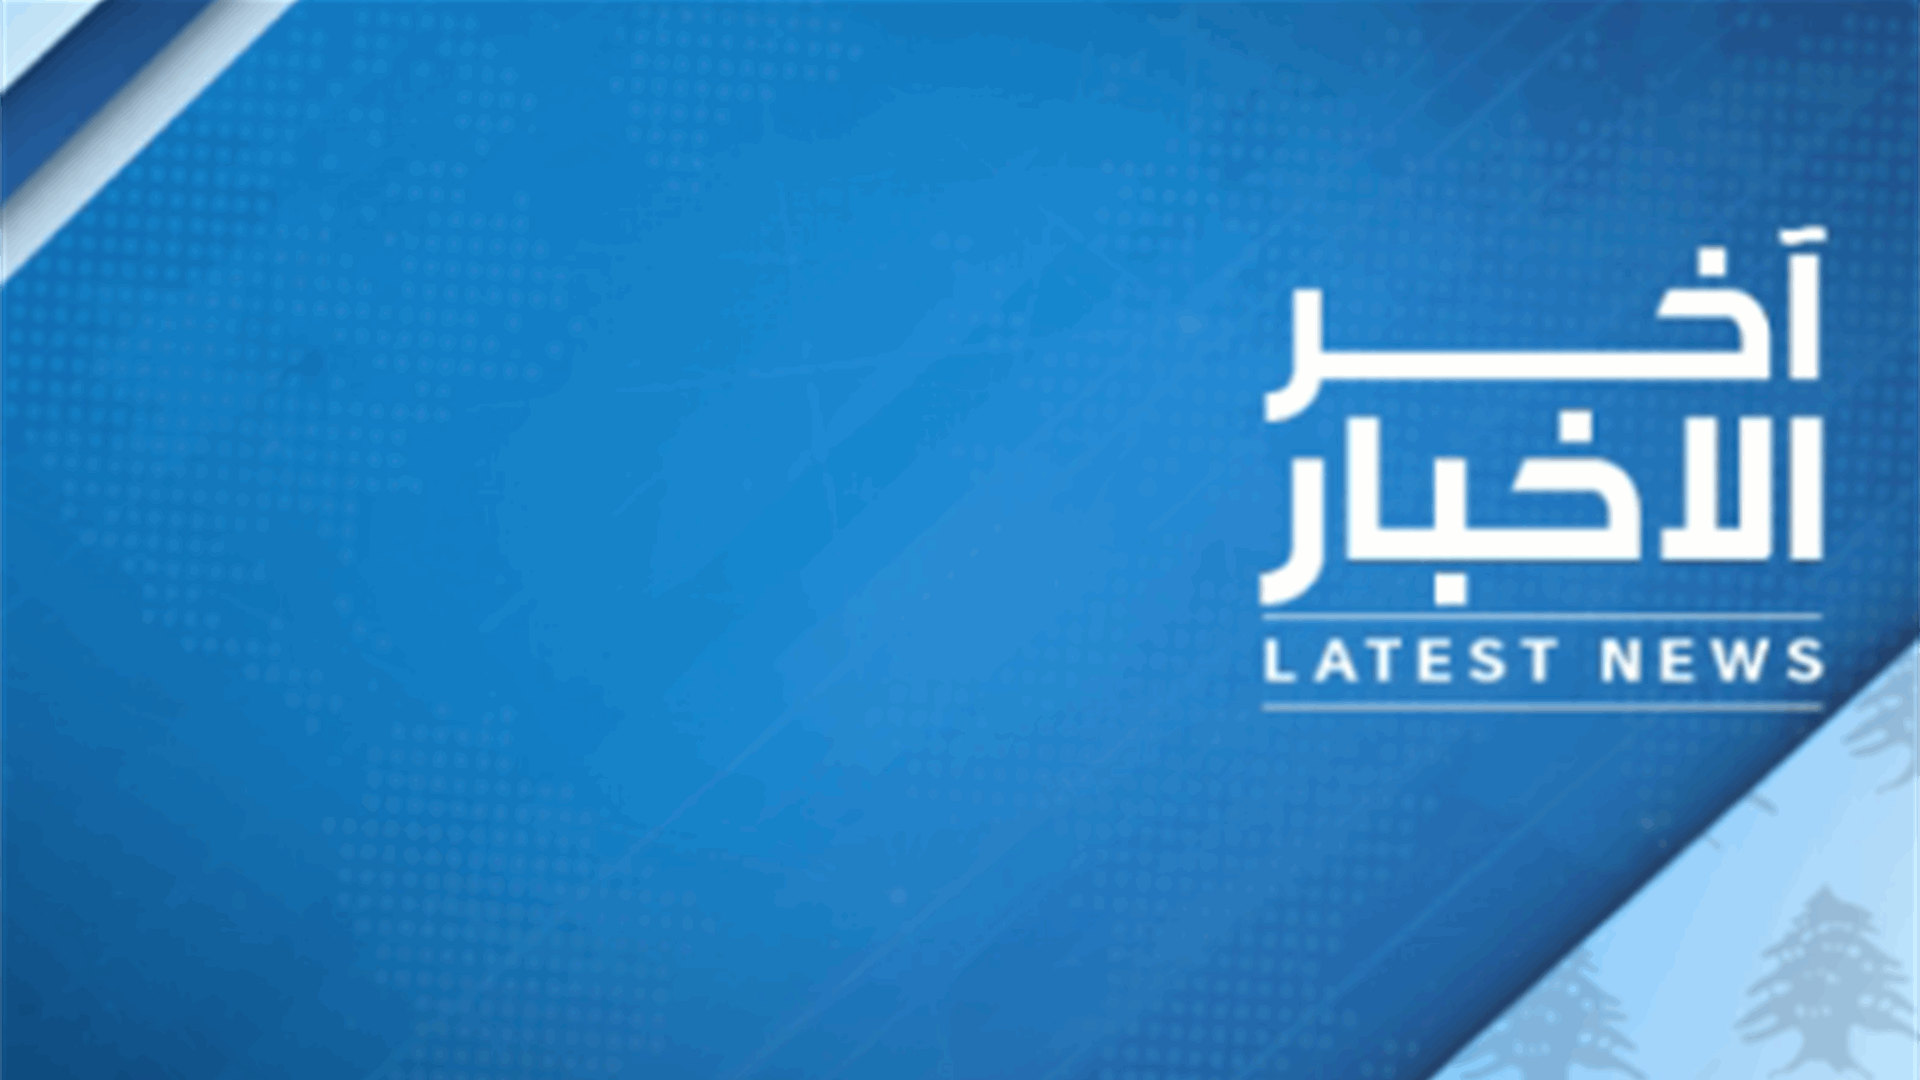 امين عام حزب الكتائب سيرج داغر يعلن باسم الكتائب افتتاح المؤتمر العام الـ 32 لحزب الكتائب